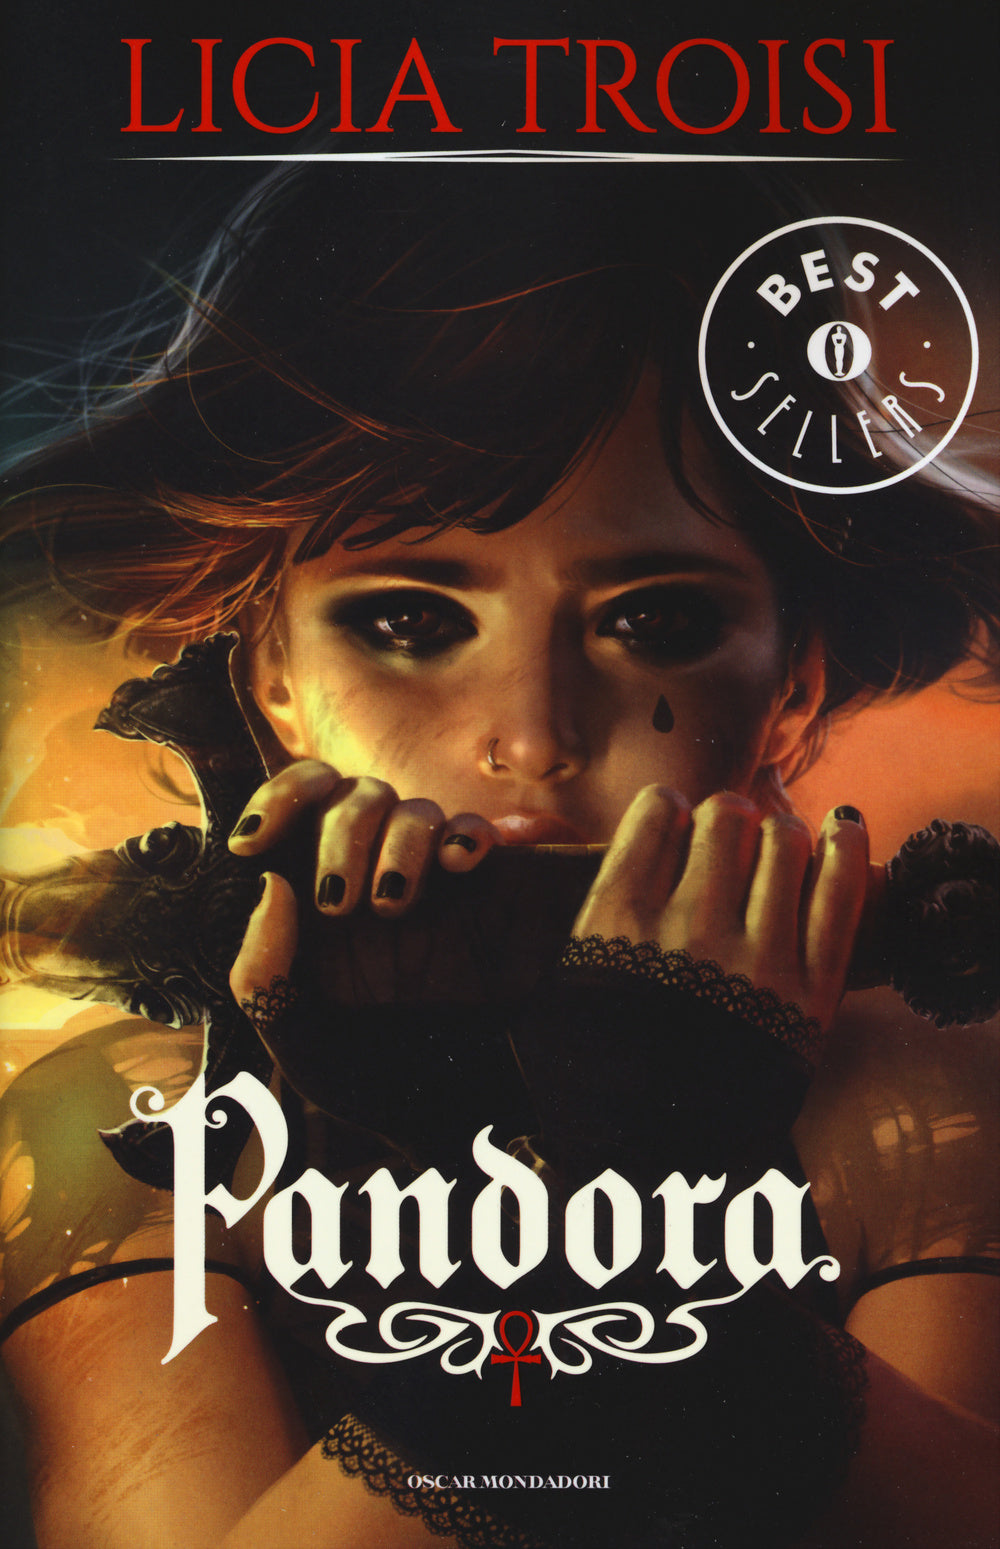 Pandora.